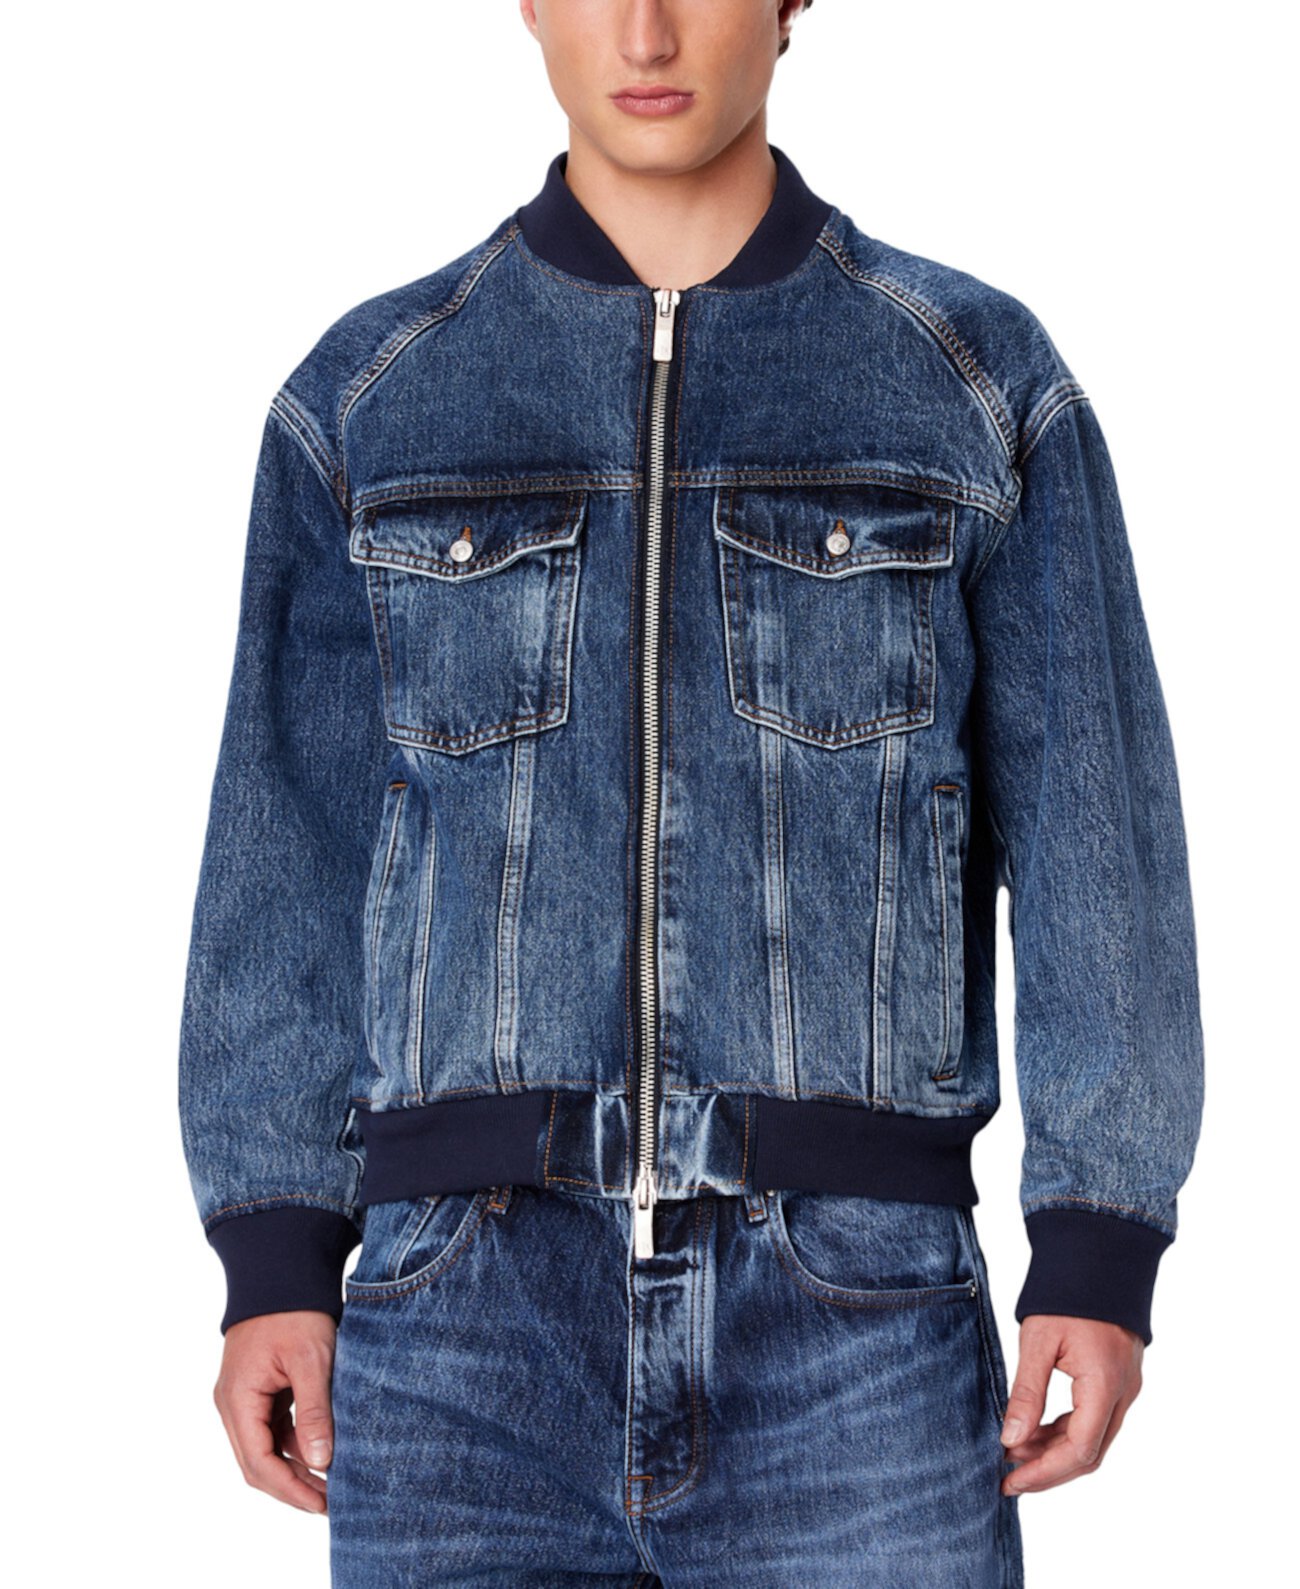 Мужская джинсовая куртка Milano ограниченной серии Armani